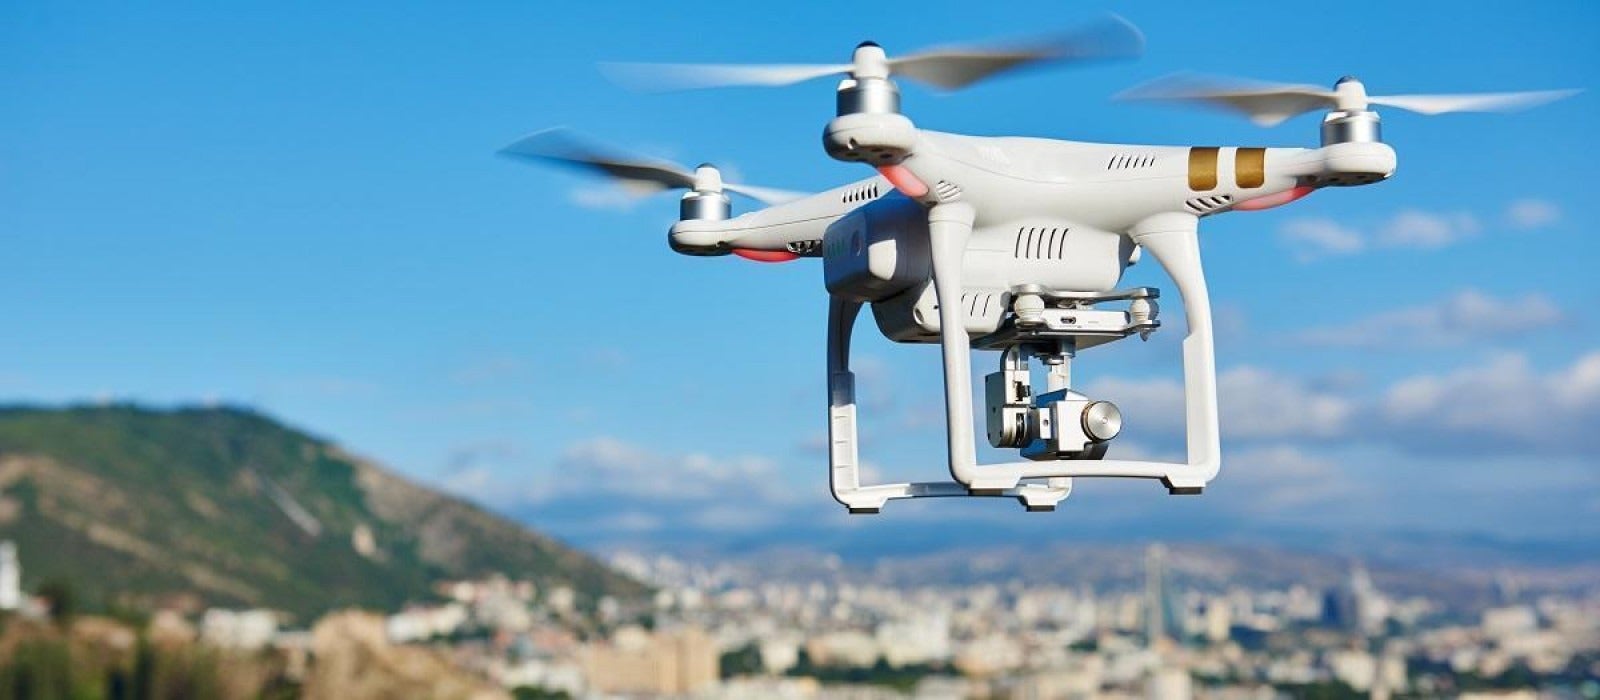 Σύστημα anti-drone θα αποκτήσει το υπουργείο Προστασίας του Πολίτη – To κτύπημα στην Aramco έδειξε ότι οι εποχές άλλαξαν